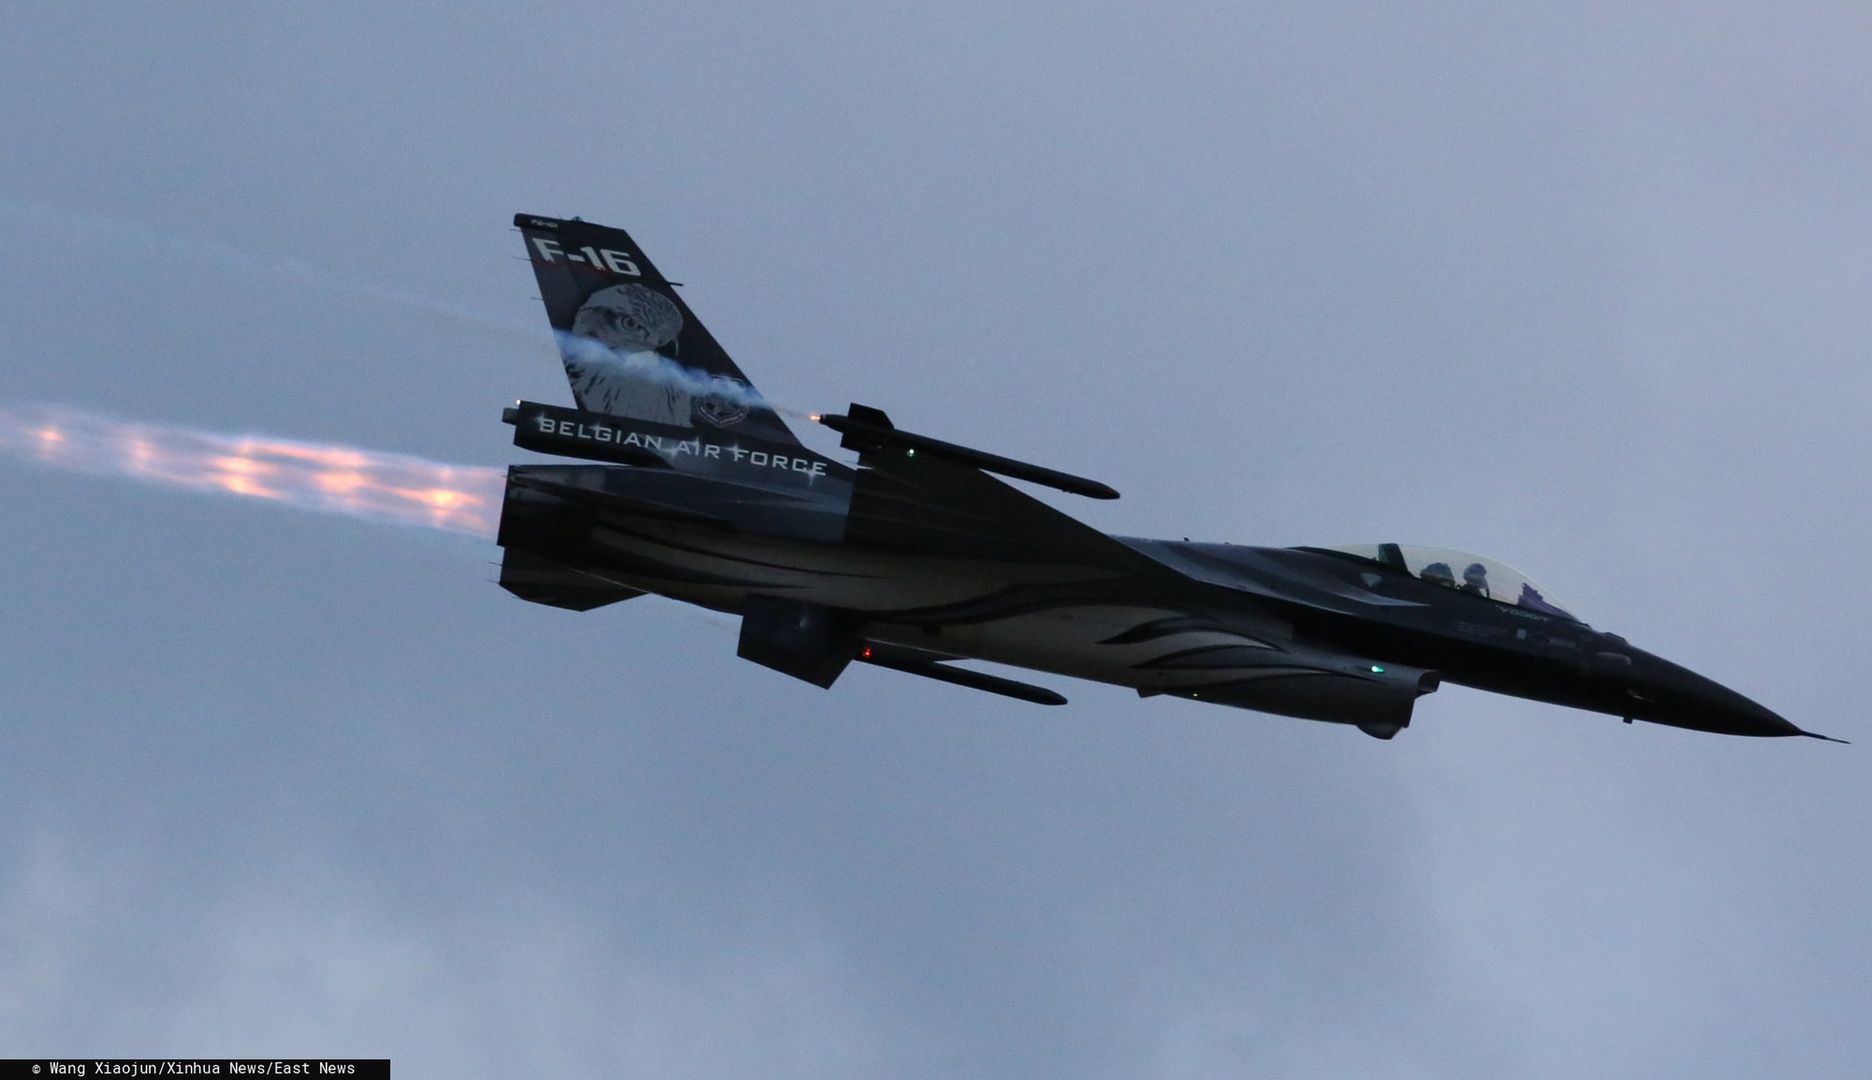 Myśliwiec F-16 podczas przelotu (zdj. arch.)